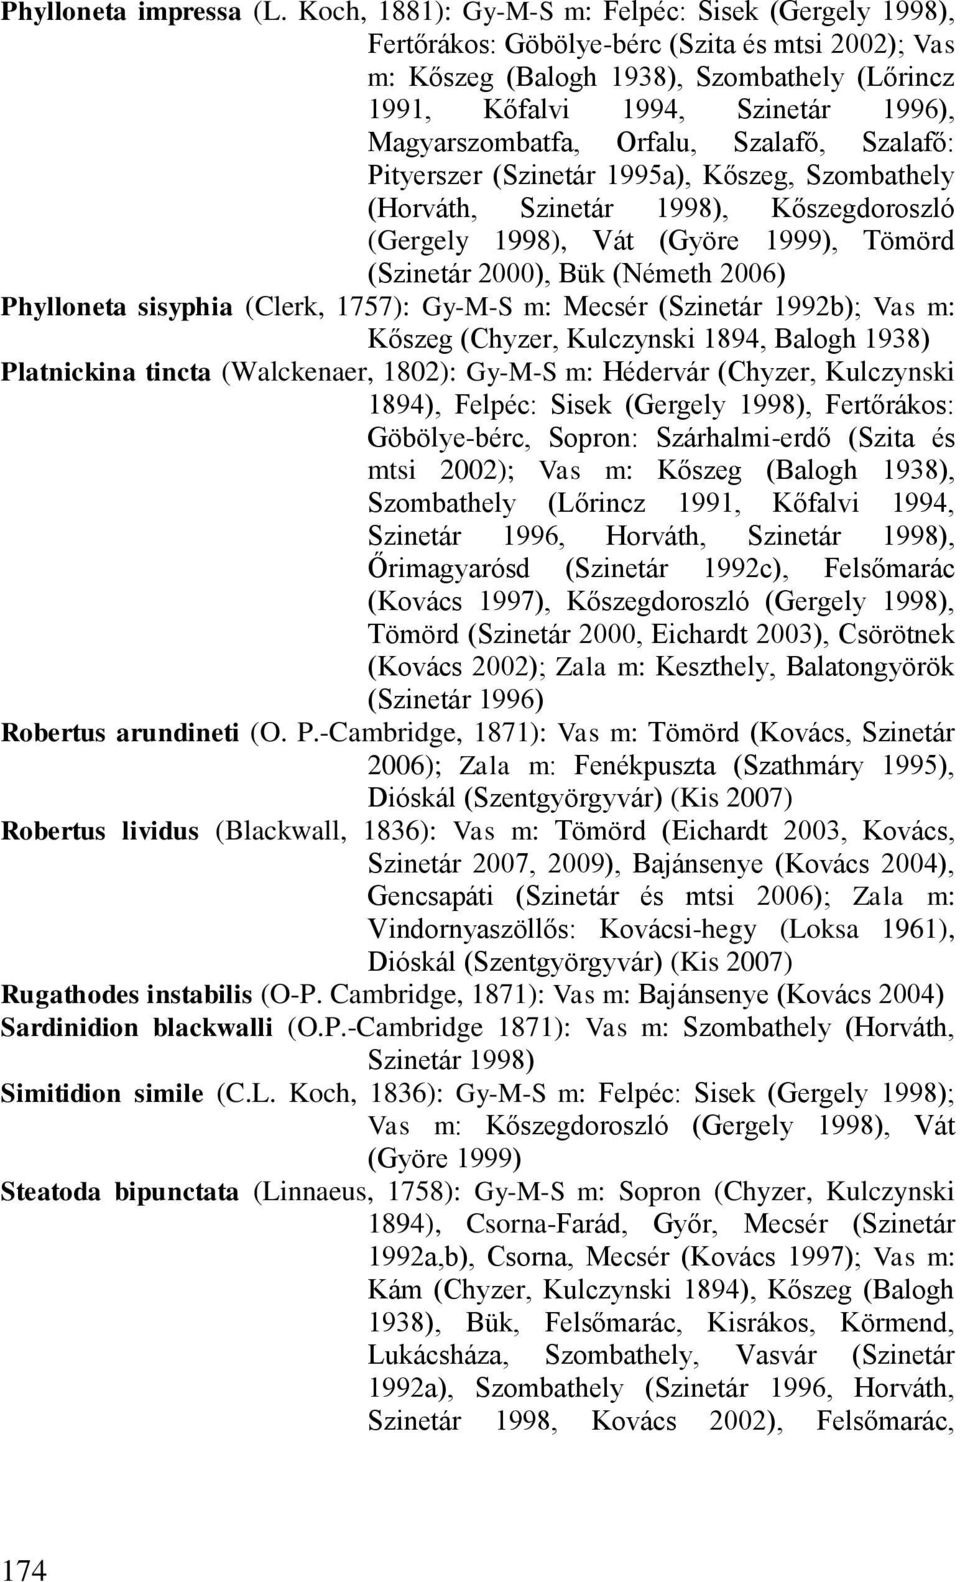 Magyarszombatfa, Orfalu, Szalafő, Szalafő: Pityerszer (Szinetár 1995a), Kőszeg, Szombathely (Horváth, Szinetár 1998), Kőszegdoroszló (Gergely 1998), Vát (Györe 1999), Tömörd (Szinetár 2000), Bük